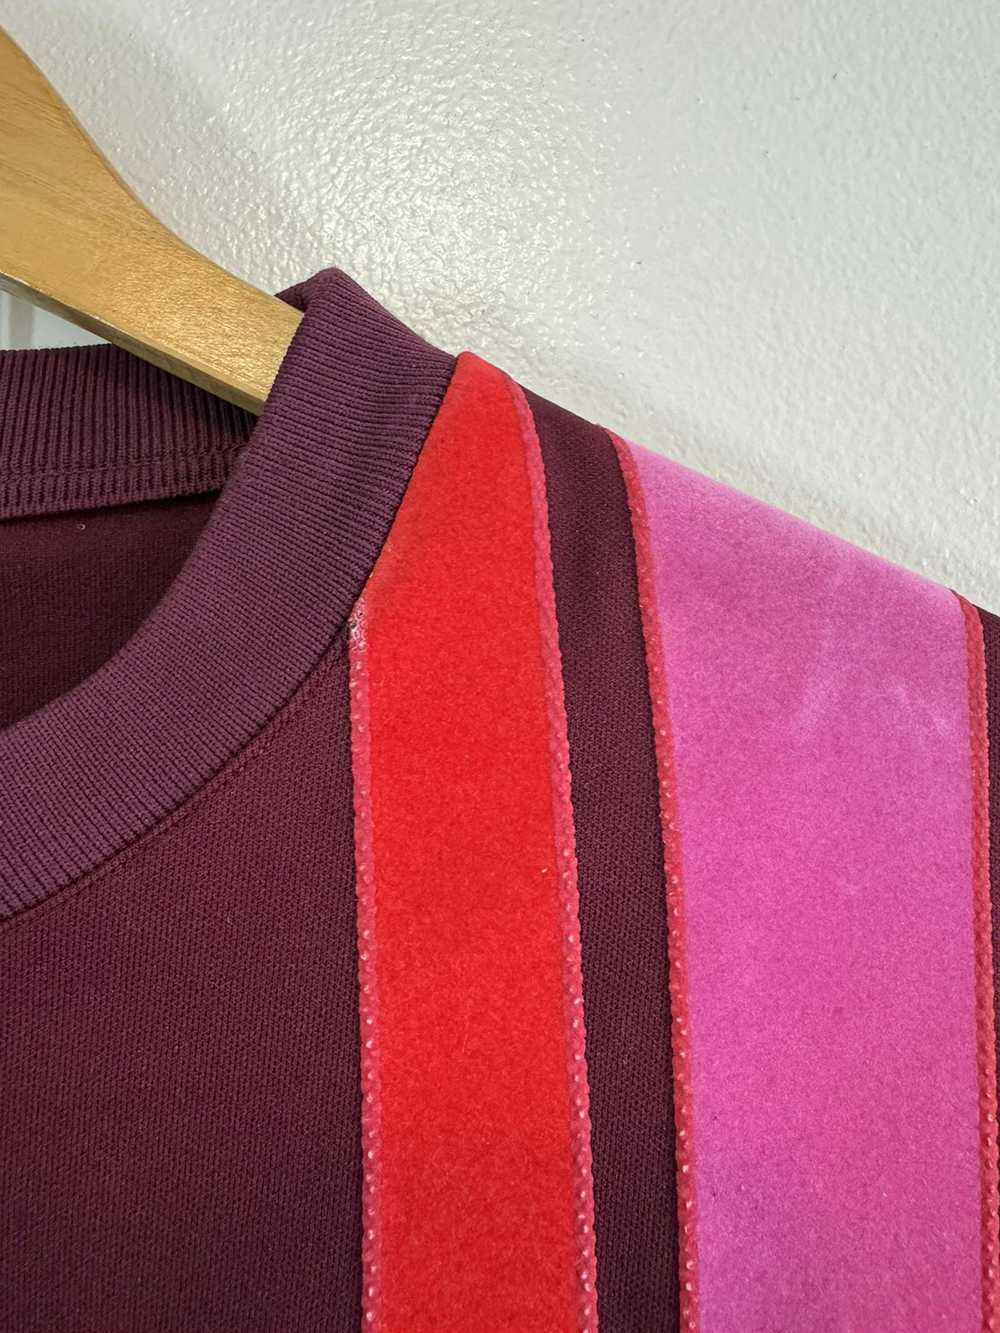 Jil Sander Jil Sander maroon burgundy sweatshirt … - image 3